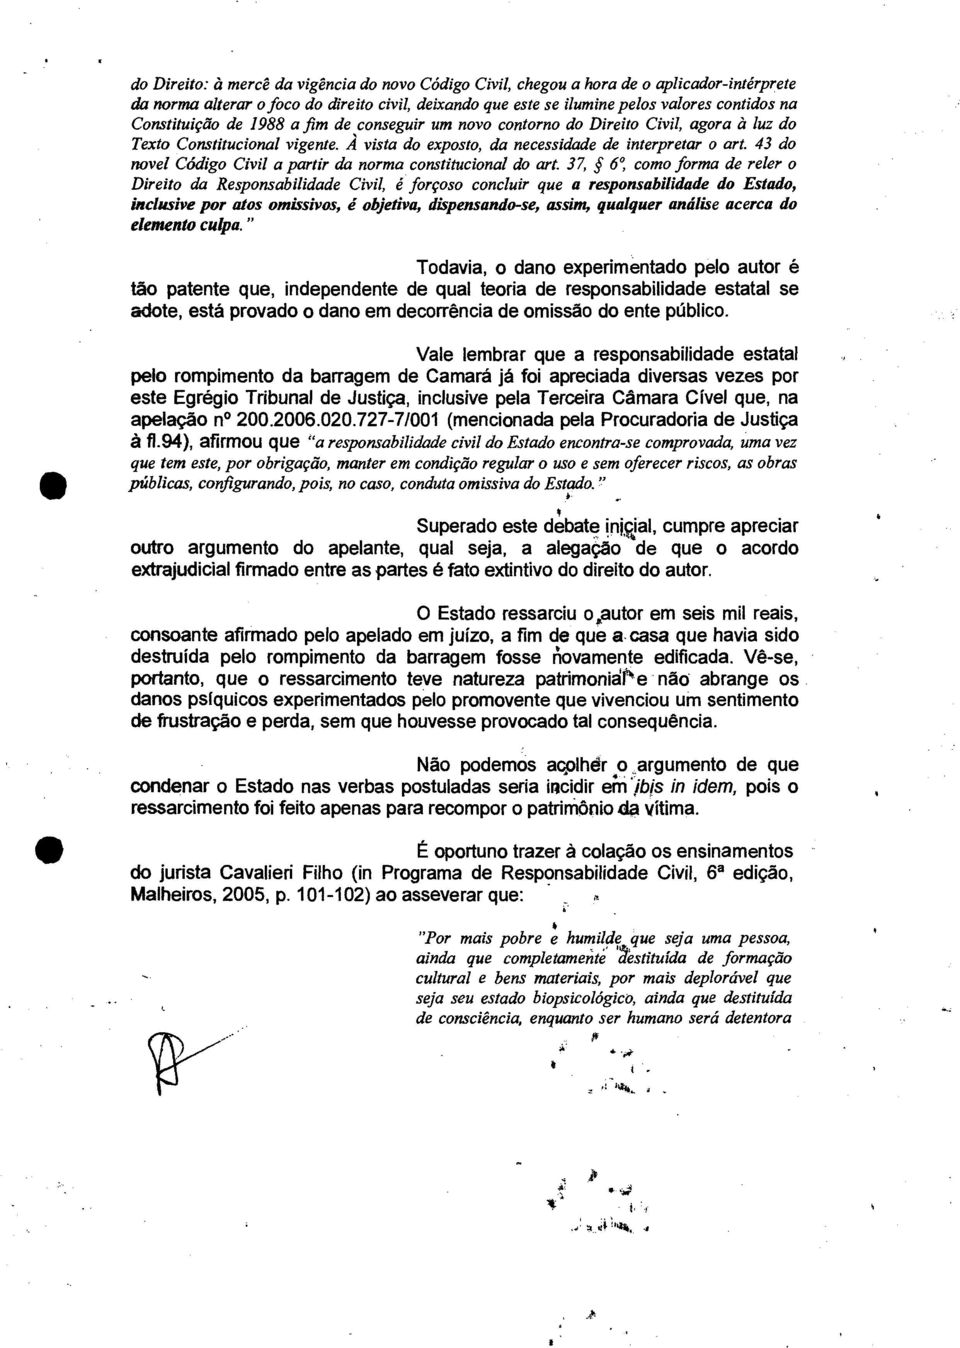 43 do novel Código Civil a partir da norma constitucional do art.